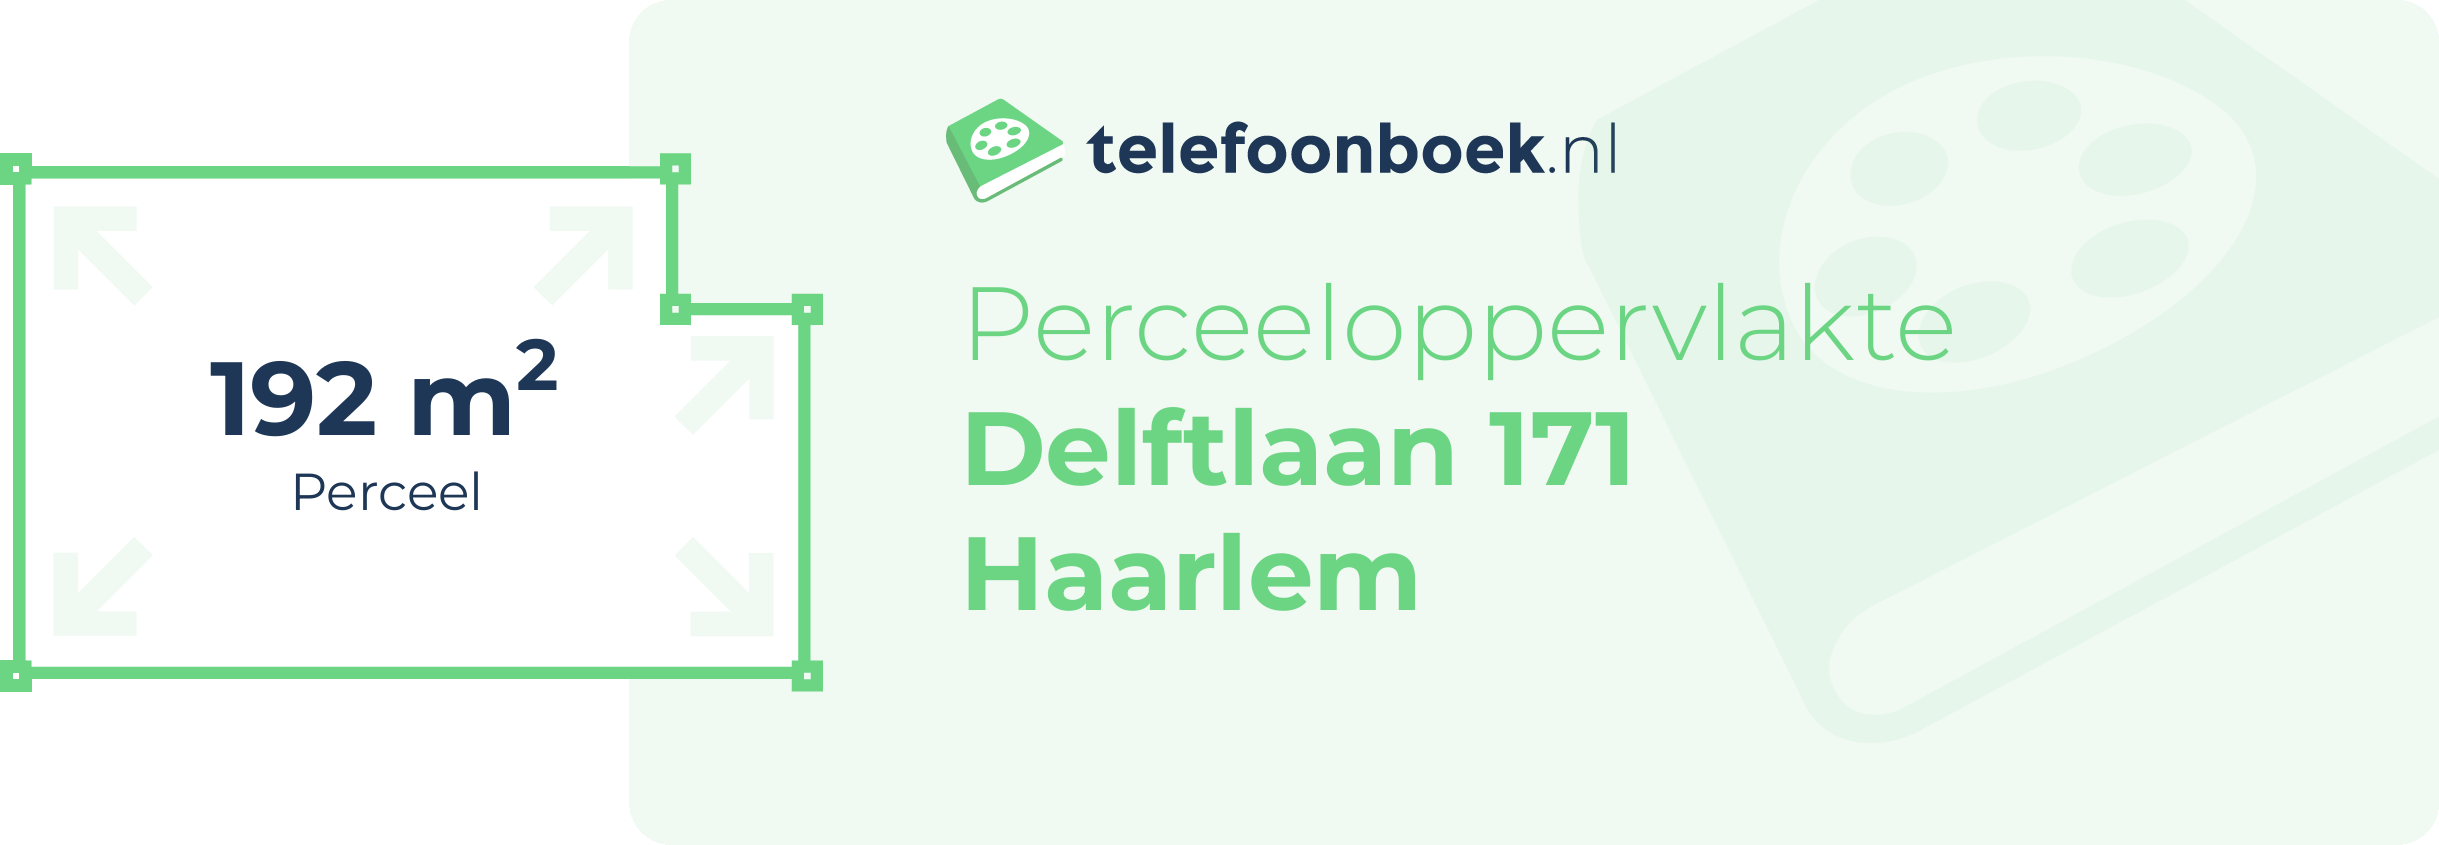 Perceeloppervlakte Delftlaan 171 Haarlem